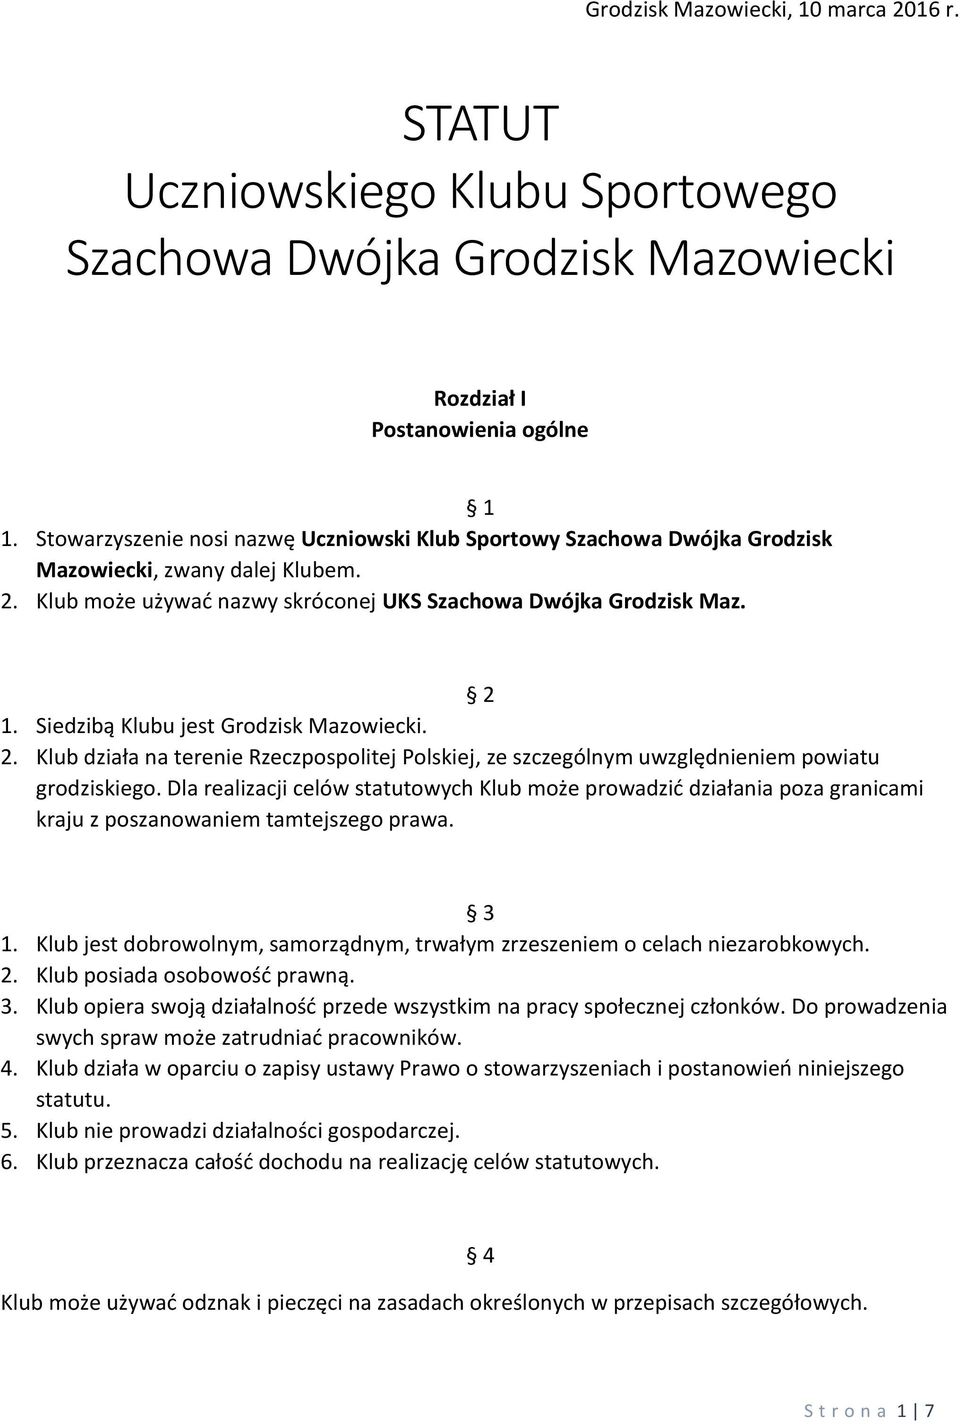 Siedzibą Klubu jest Grodzisk Mazowiecki. 2. Klub działa na terenie Rzeczpospolitej Polskiej, ze szczególnym uwzględnieniem powiatu grodziskiego.